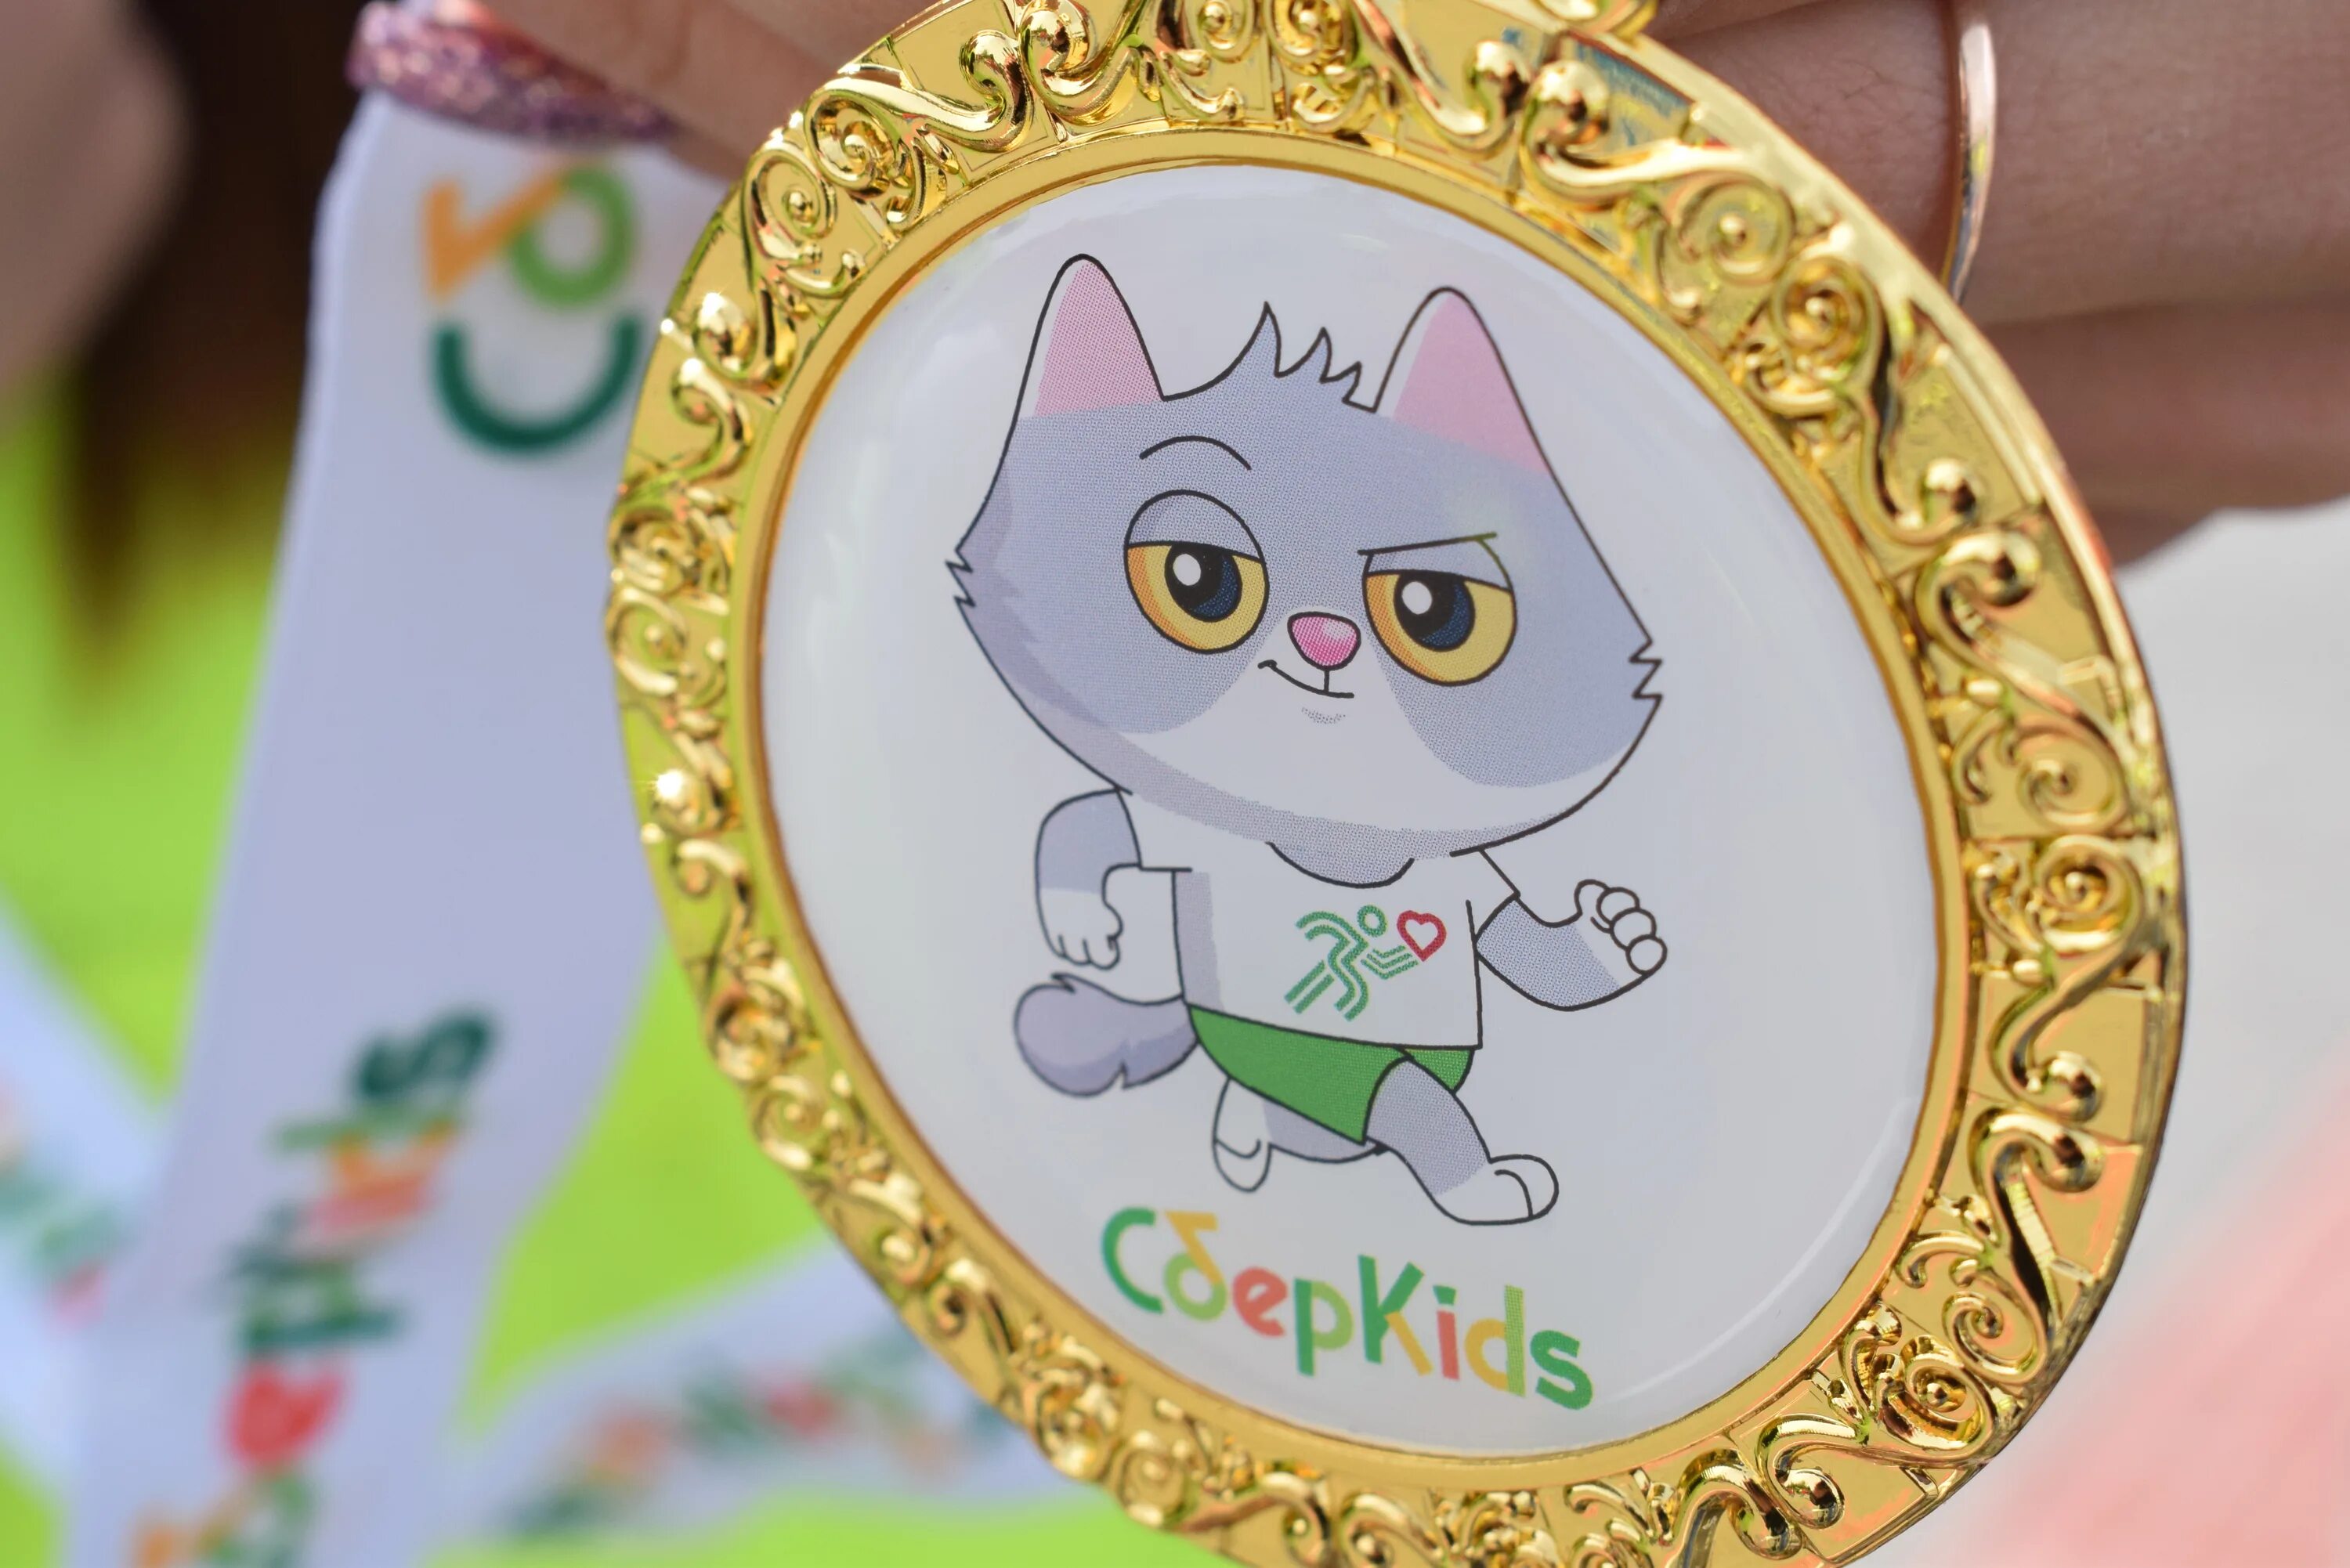 Котик с медалькой. Карта СБЕРКИДС С котом. Зеленая медаль. Медаль на детский забег. Сберкидс спасибо